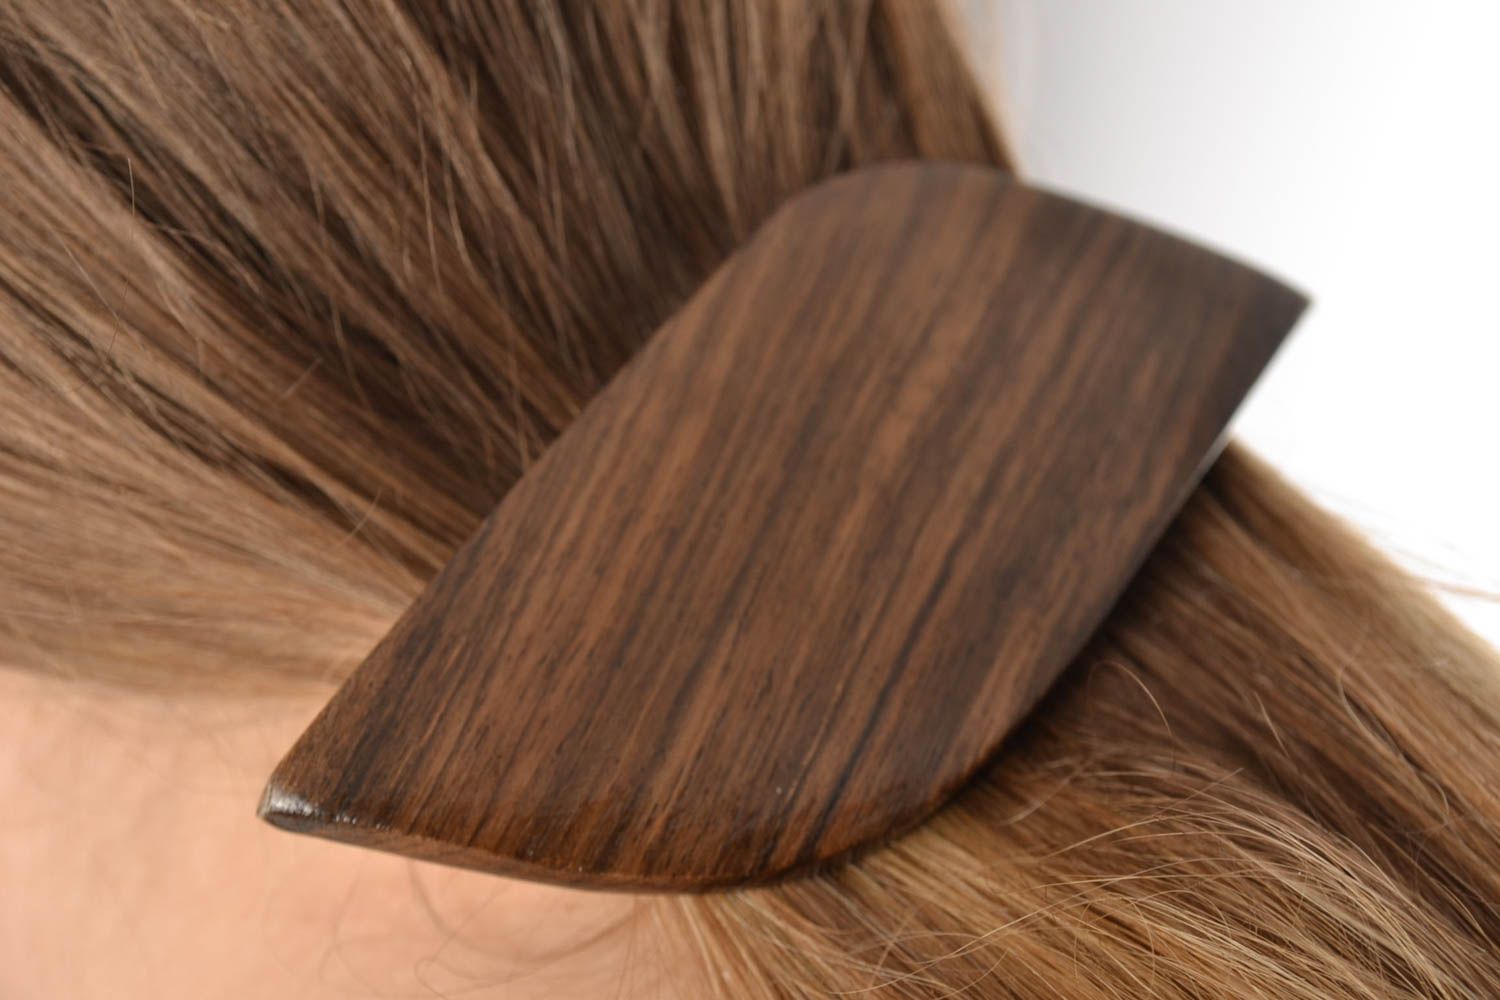 Заколка из дерева для волос женская красивая темная зажим-автомат хендмейд фото 1